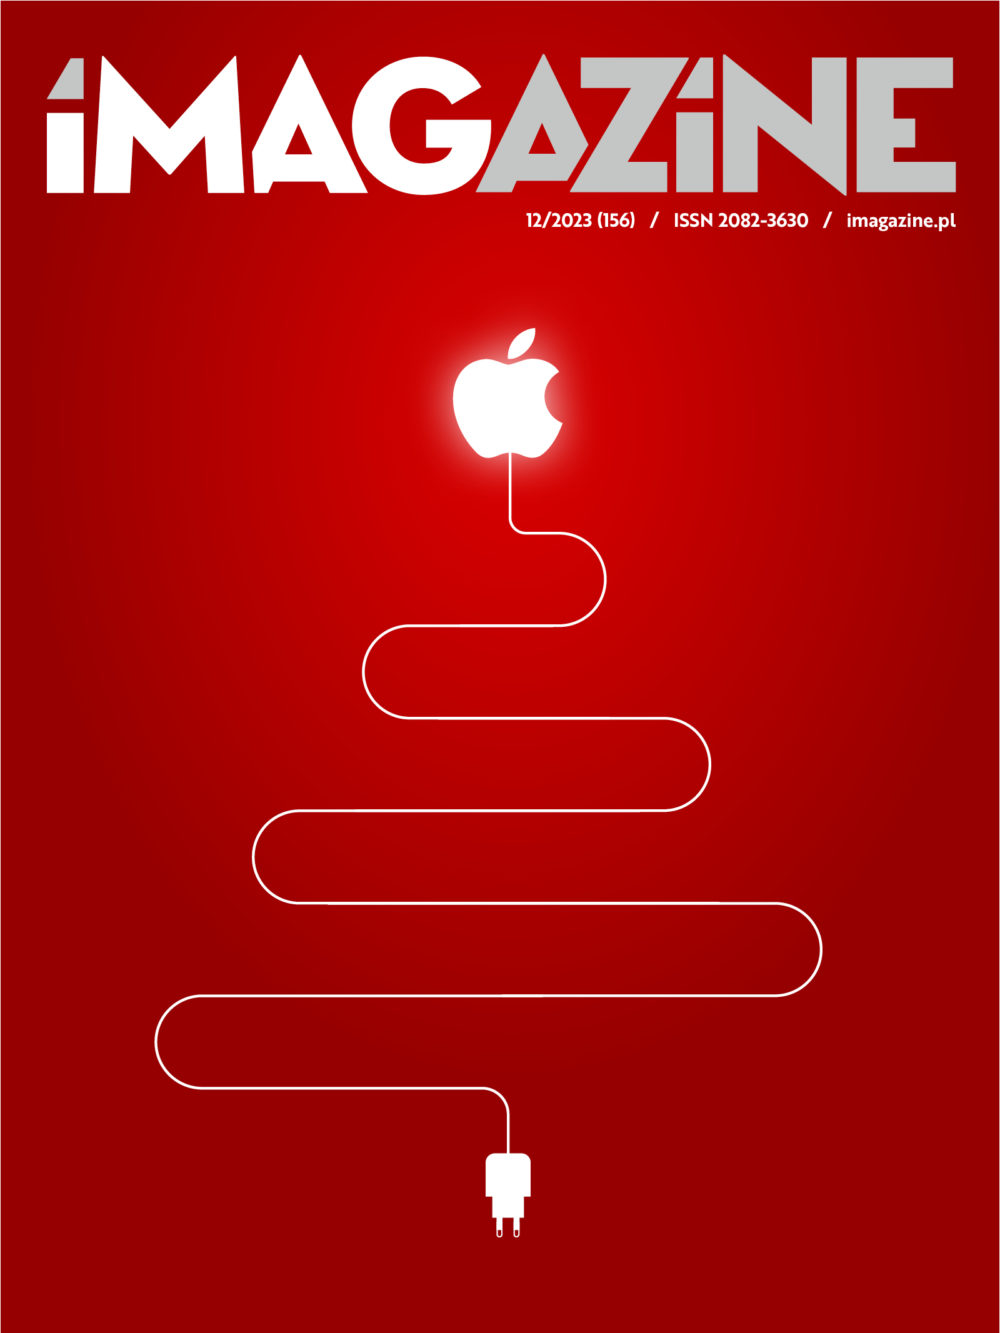 Zdjęcie okładkowe do wpis iMagazine 12/2023 – niedaleko pada jabłko od choinki